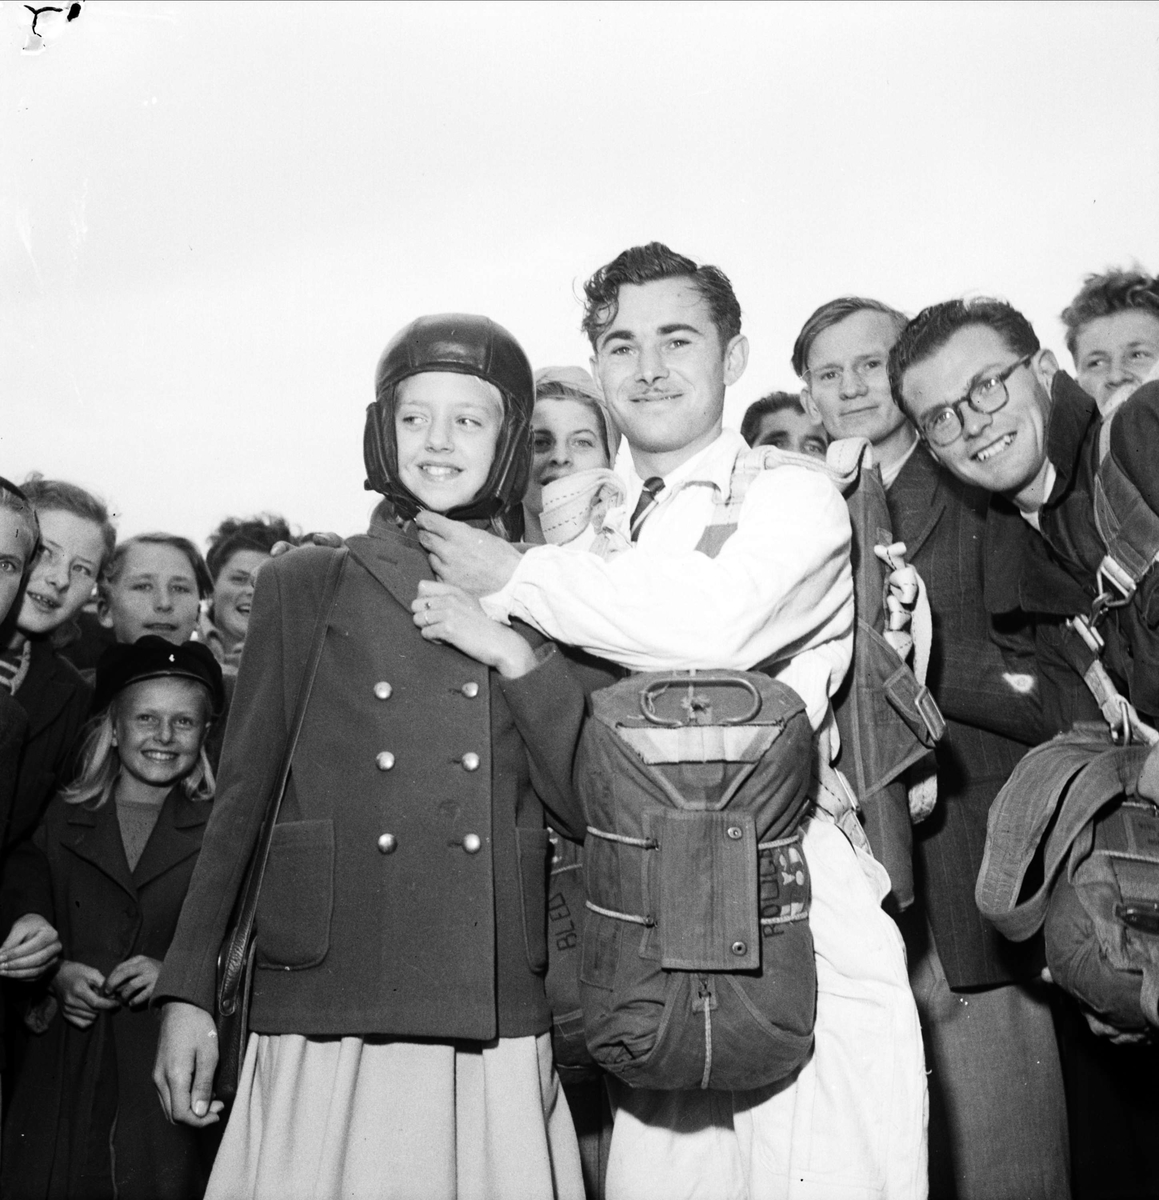 Franske fallskärmshopparen Pierre Matou med åskådare, "Sportflygets dag", Sundbro flygplats, Uppland 1948